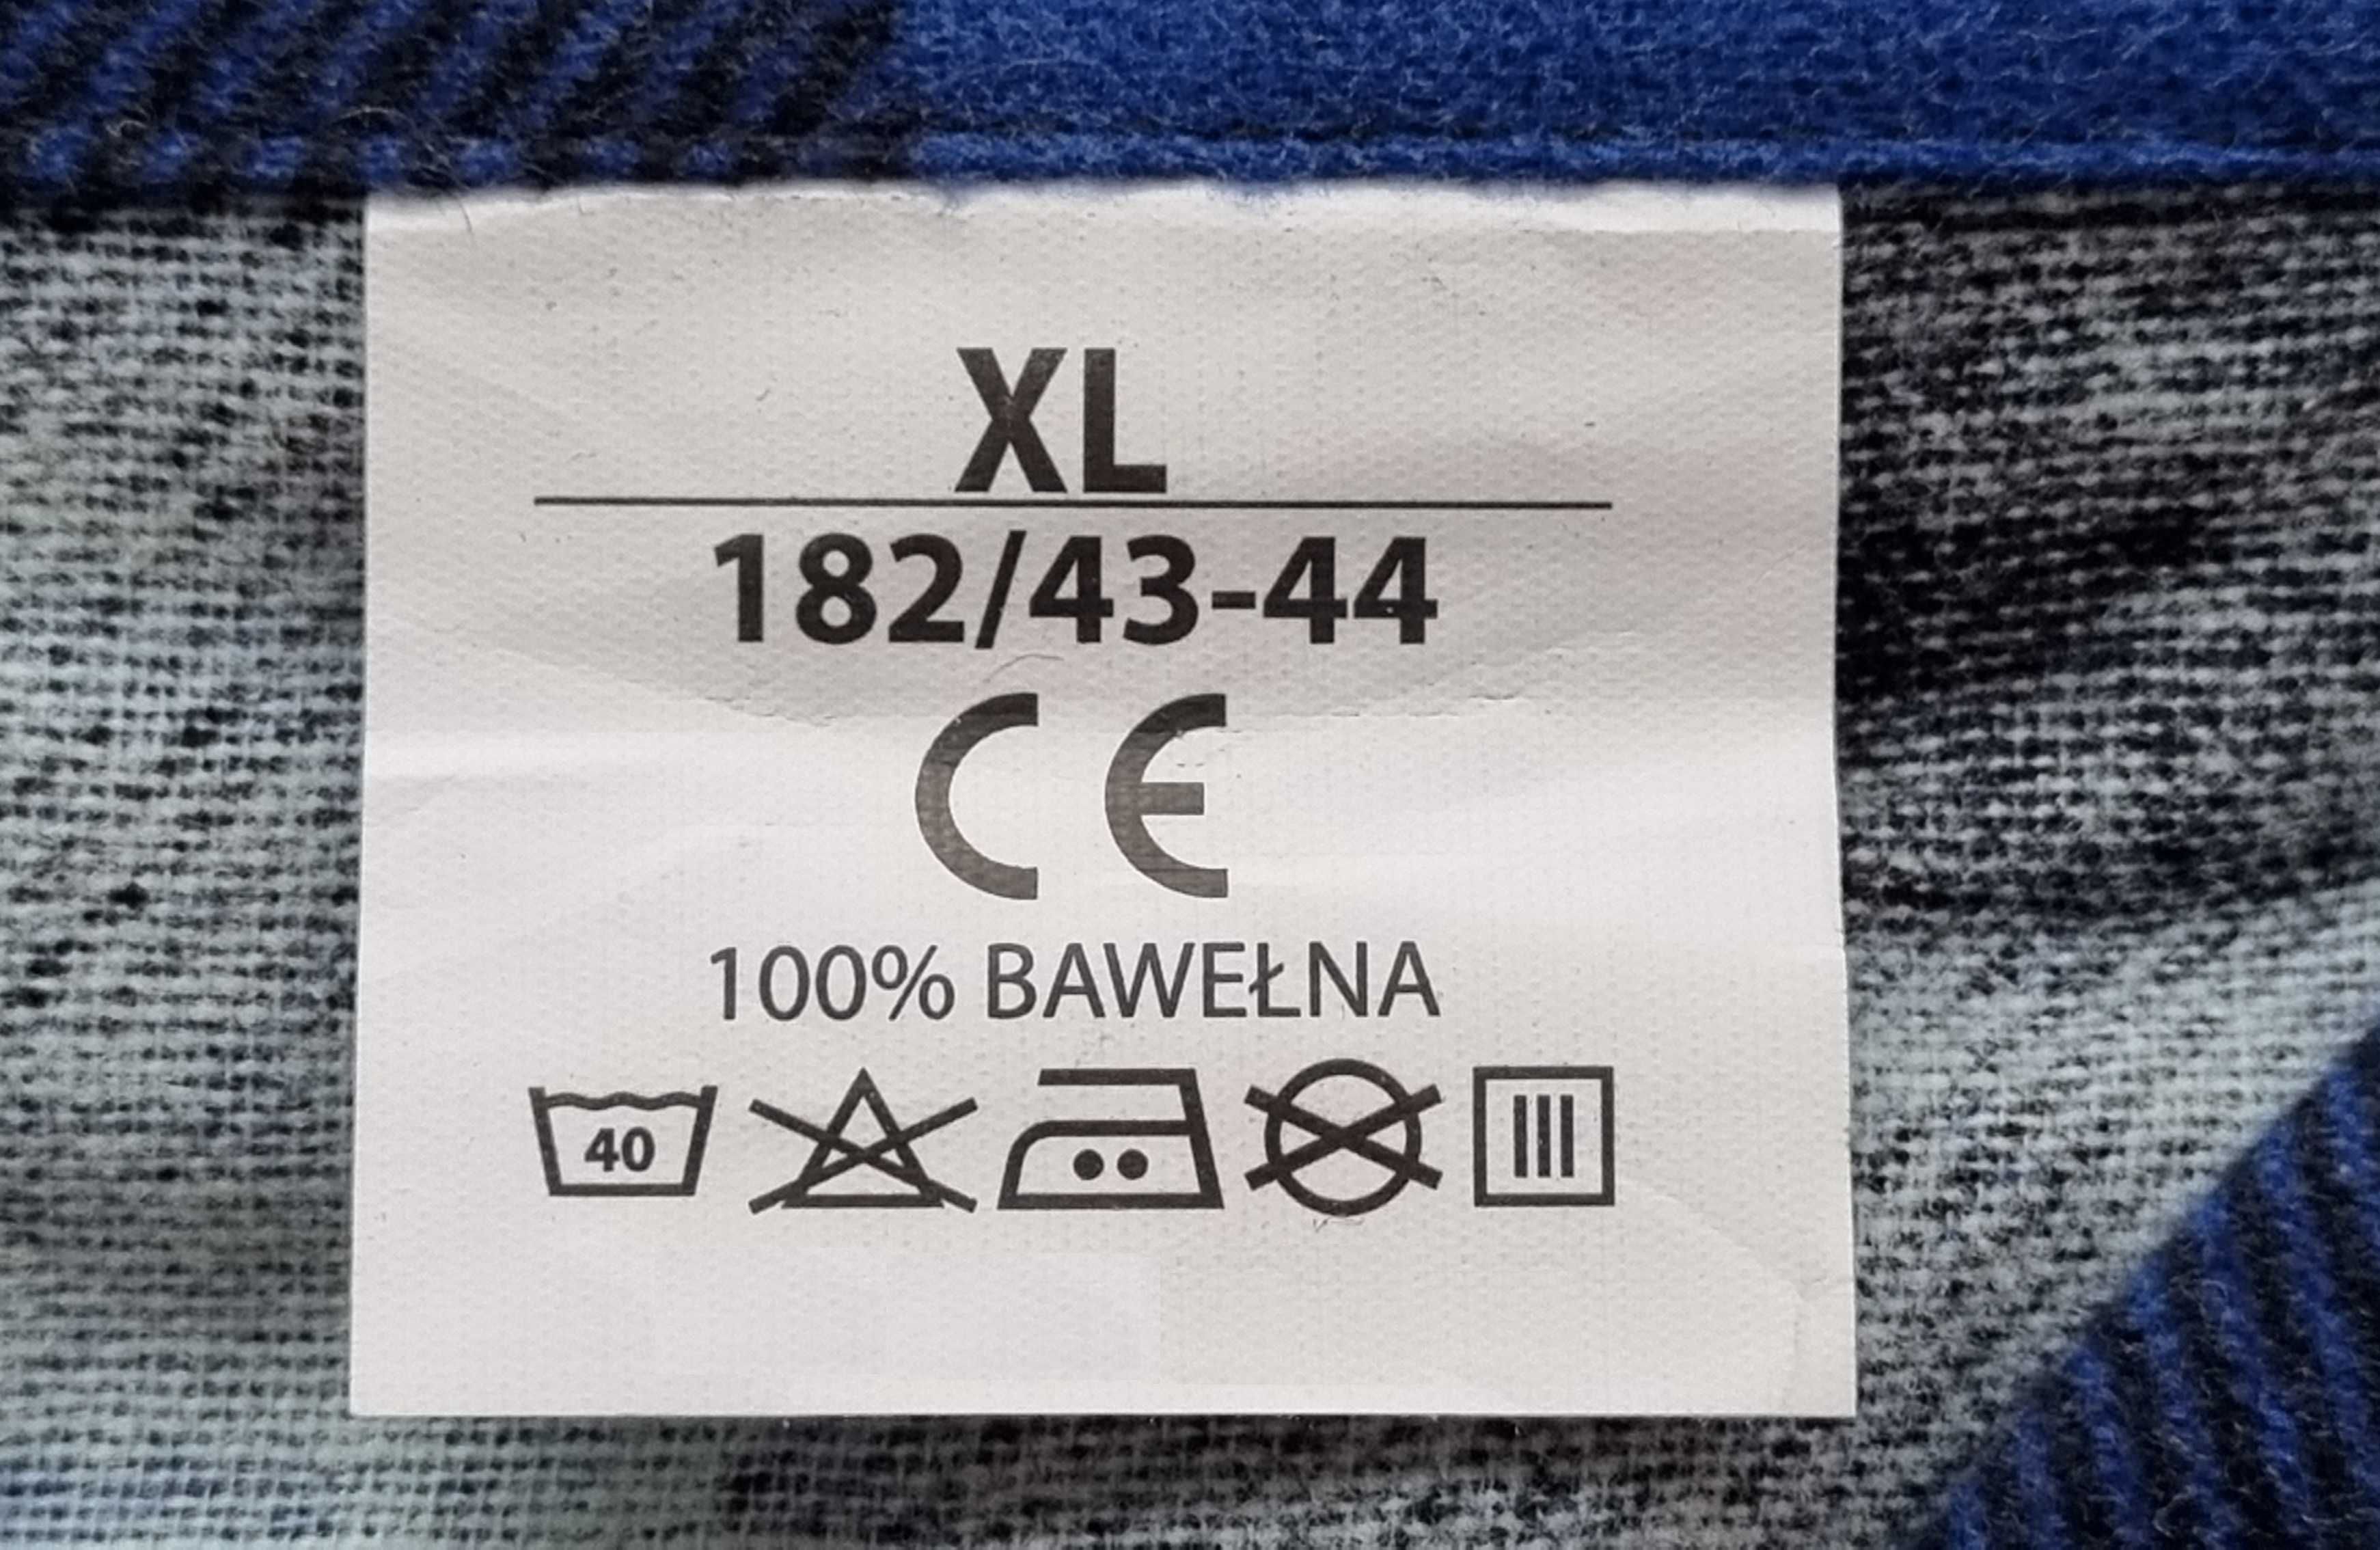 Koszula flanelowa robocza niebieska MIĘKKA r. M - 5XL kraj 100%bawełna